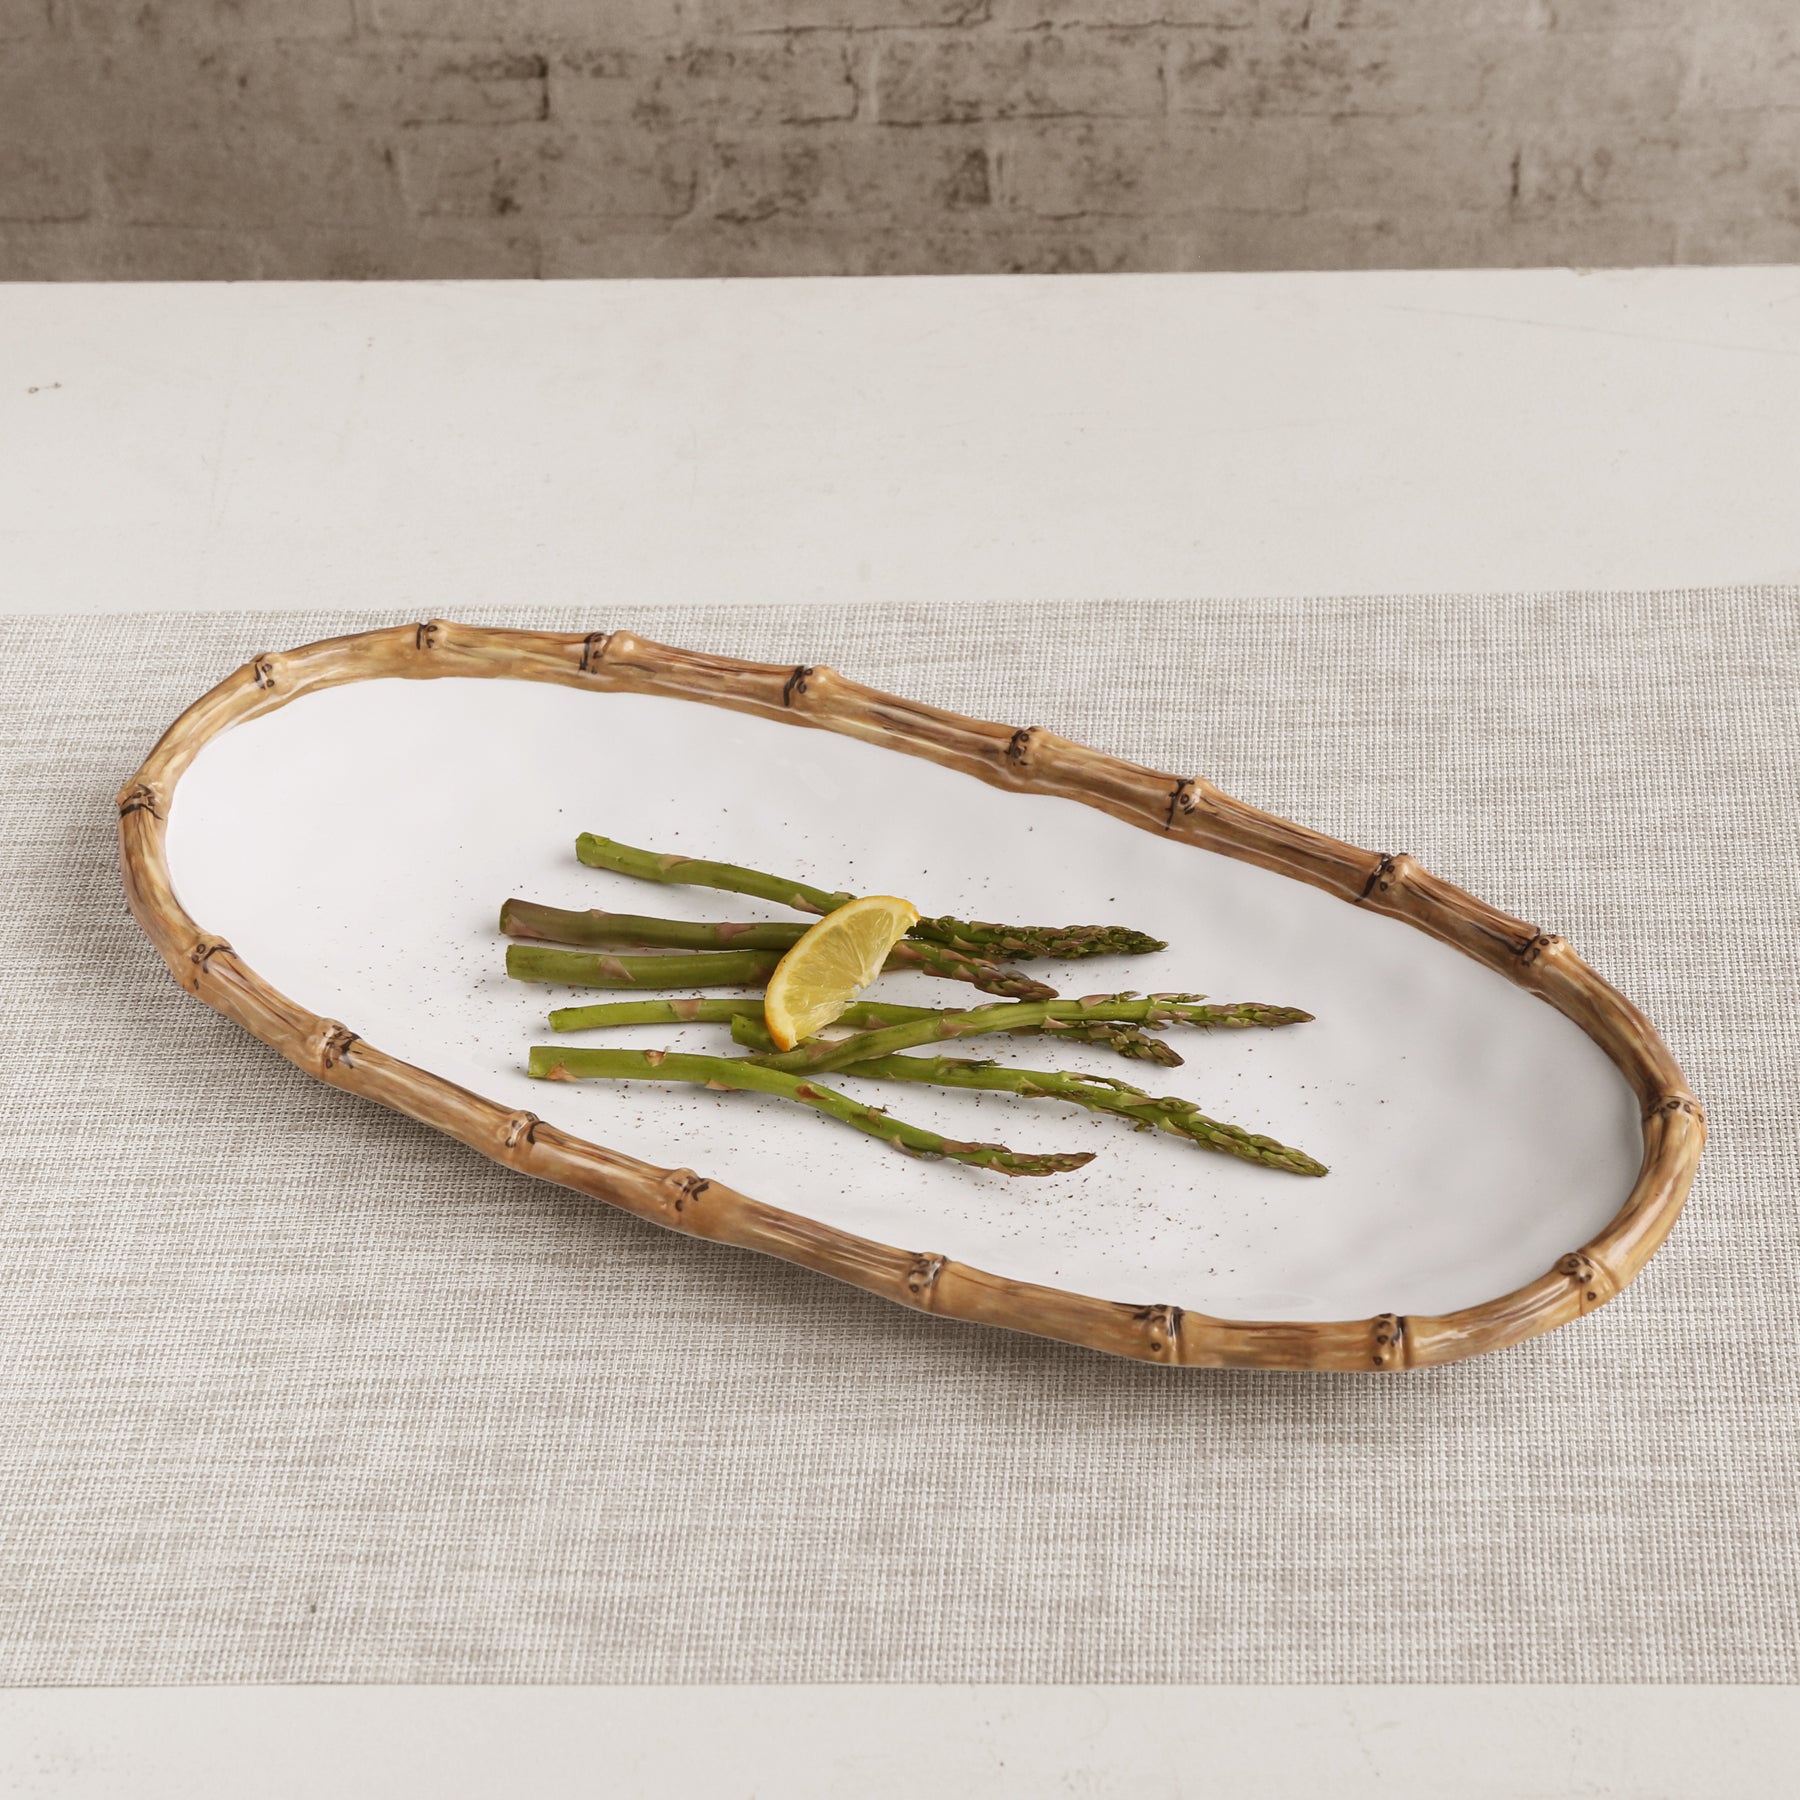 VIDA Bamboo Medium Oval Platter (White and Natural)